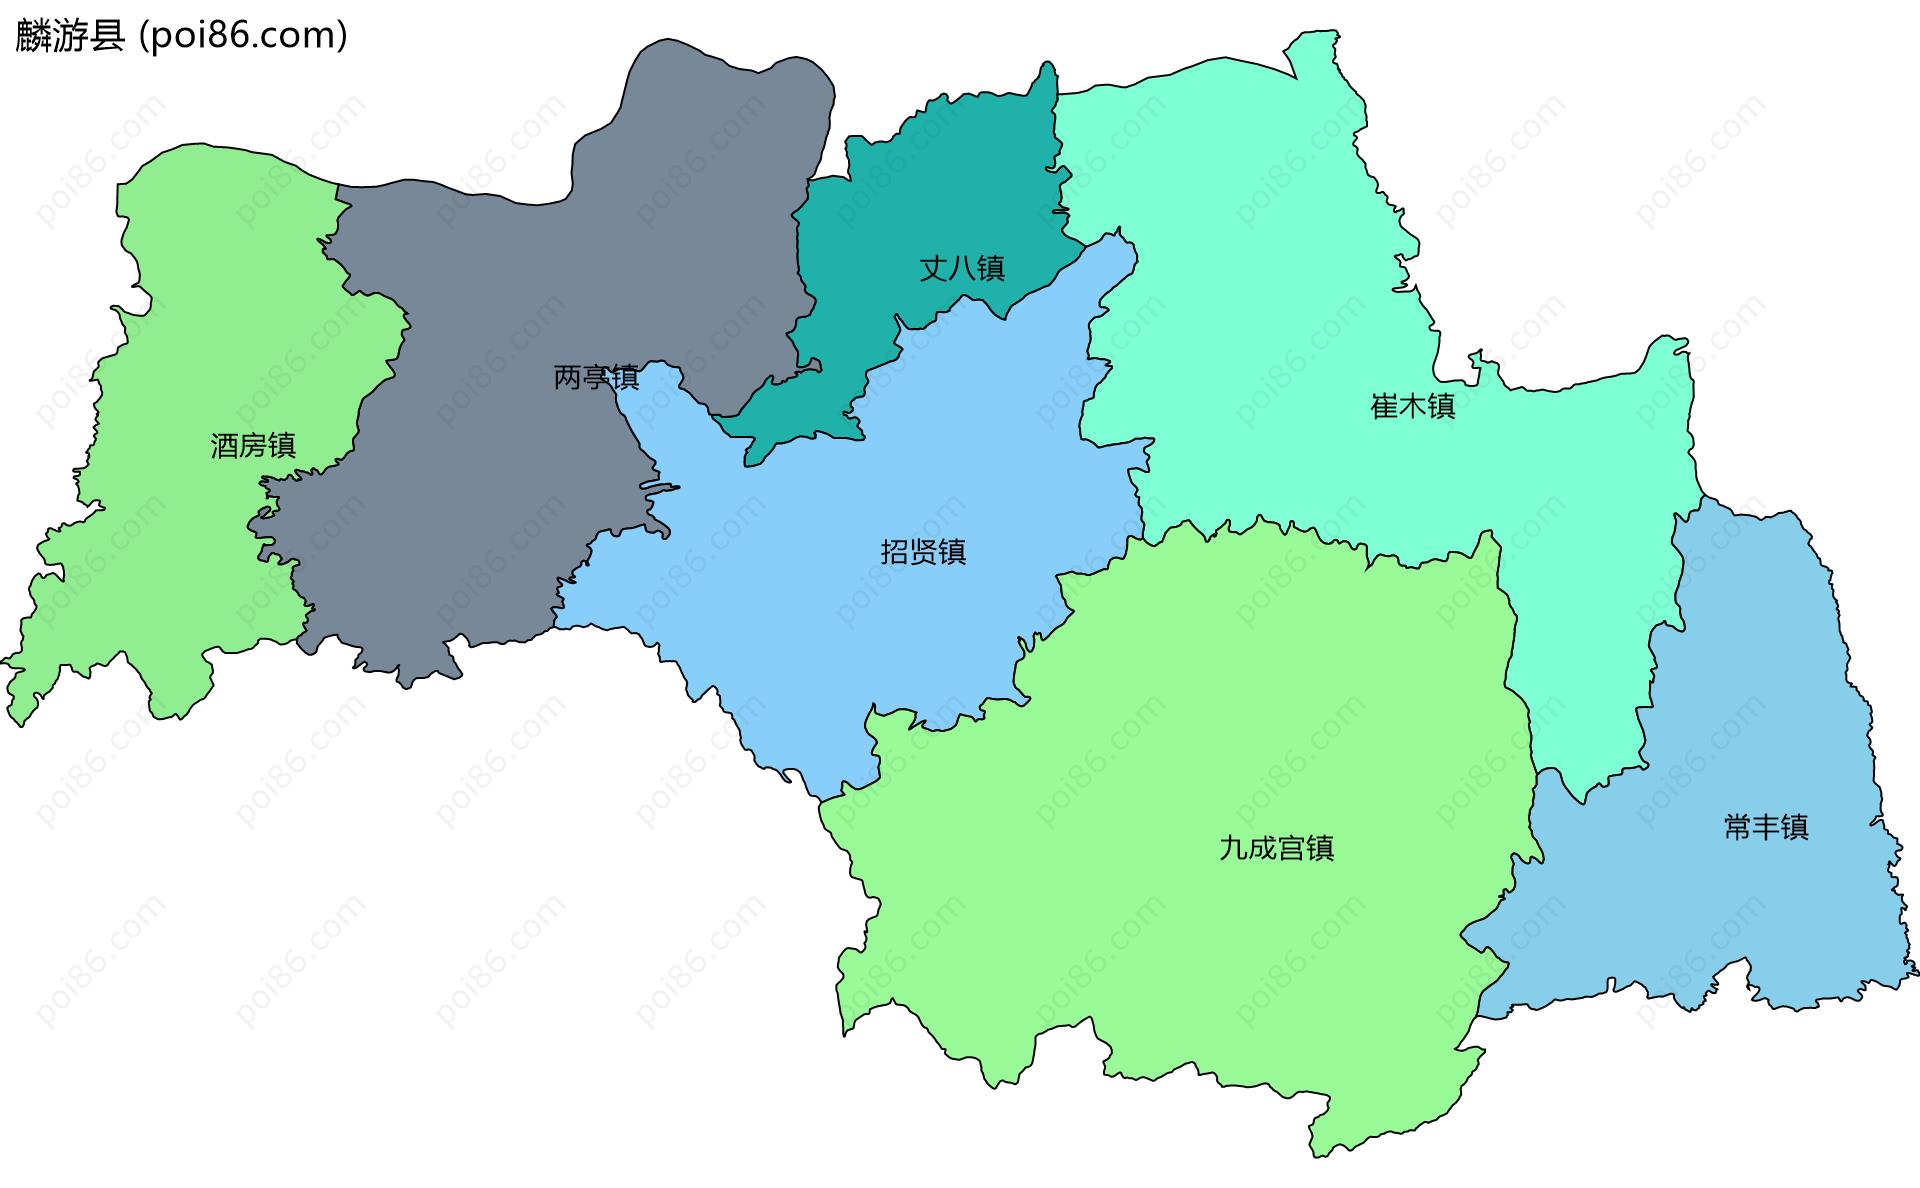 麟游县边界地图